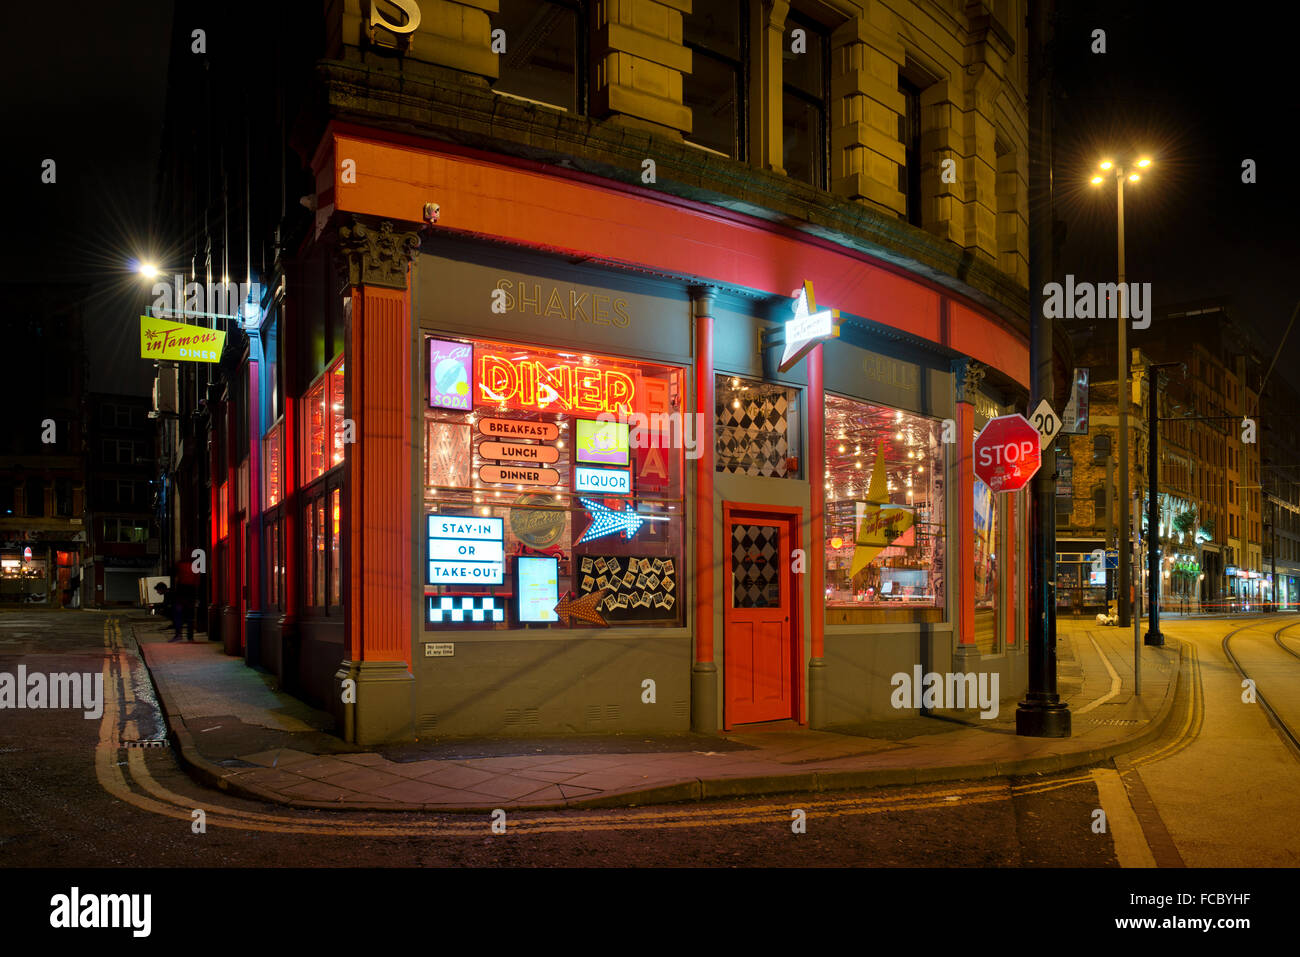 Le fameux American retro restaurant à thème situé sur High Street, dans le centre-ville de Manchester. Banque D'Images